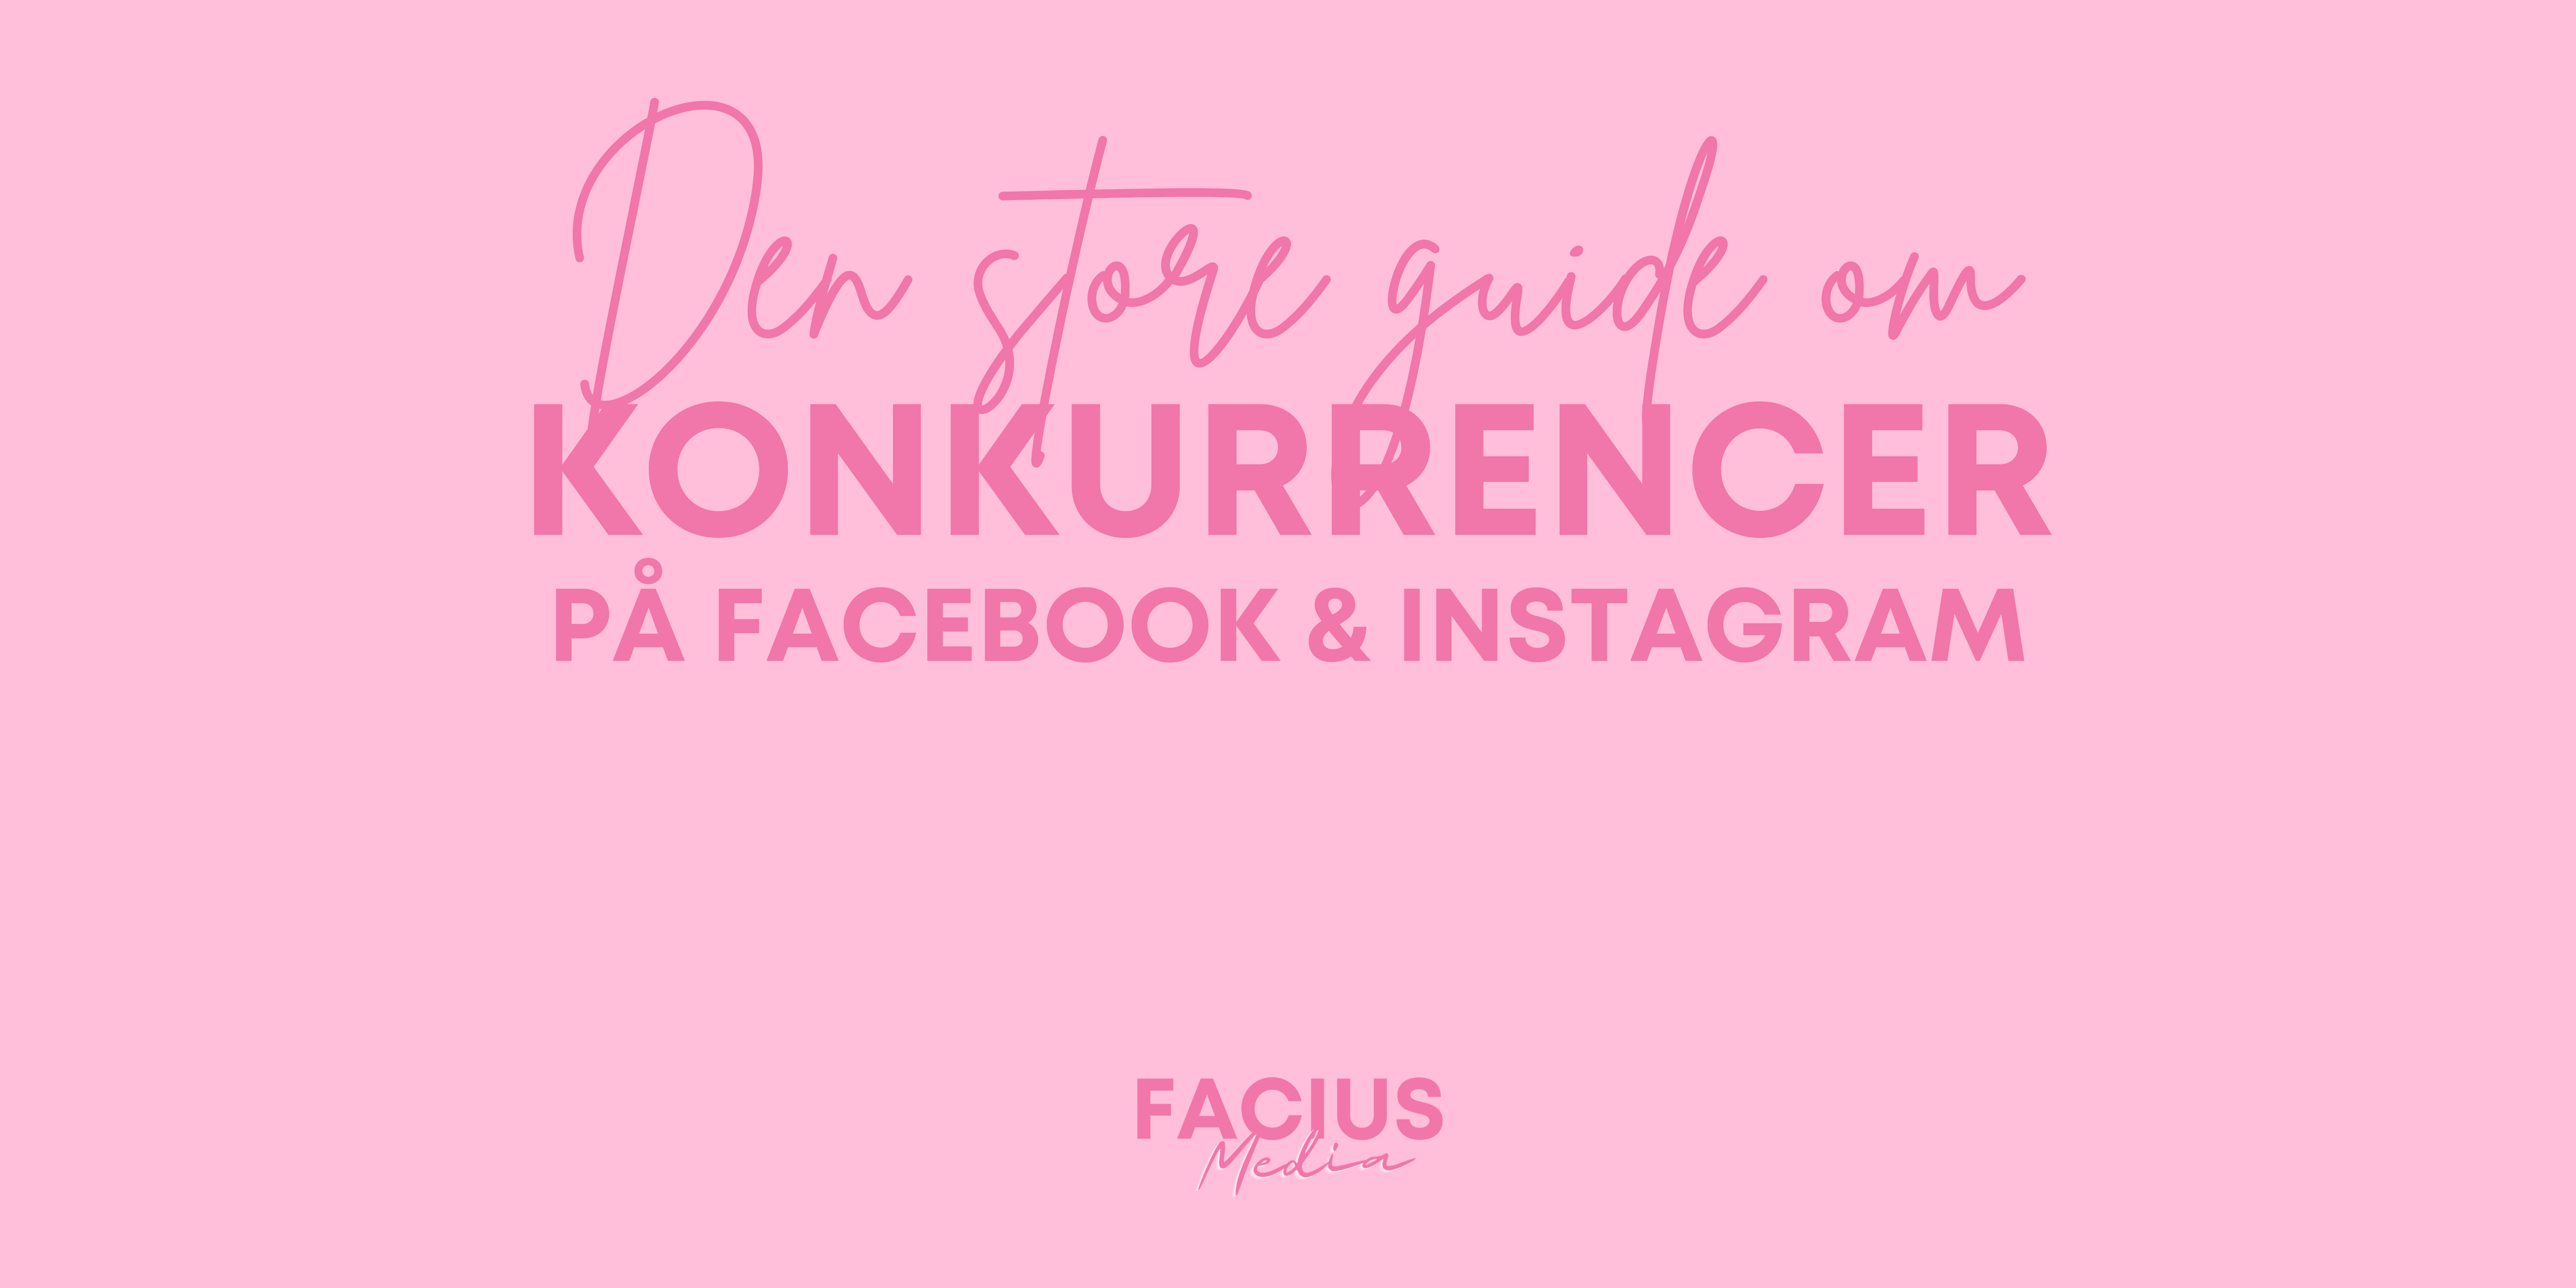 Den store guide om Konkurrencer på Facebook & Instagram